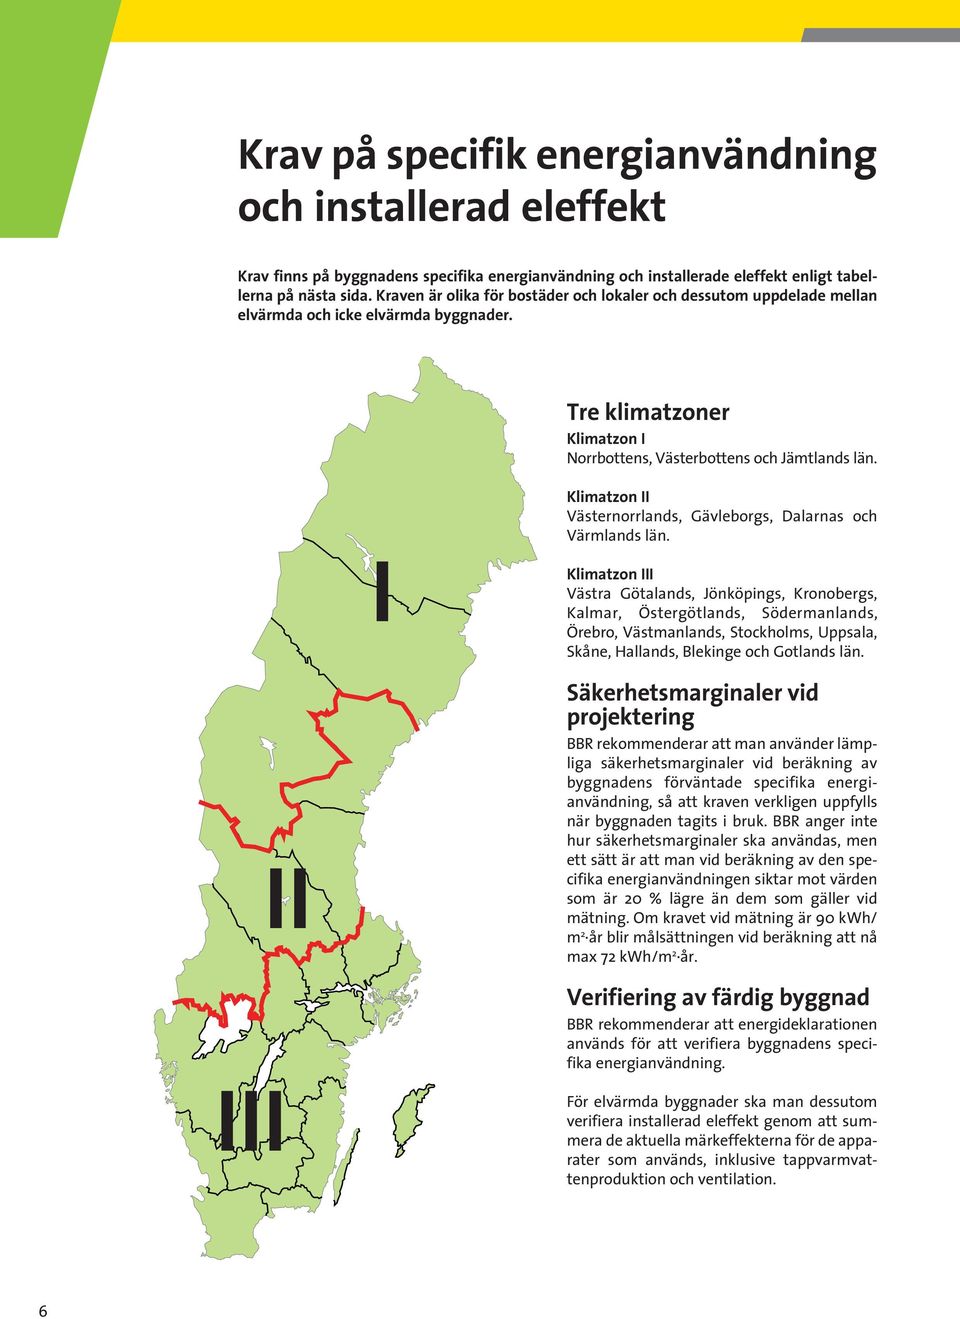 Klimatzon II Västernorrlands, Gävleborgs, Dalarnas och Värmlands län.